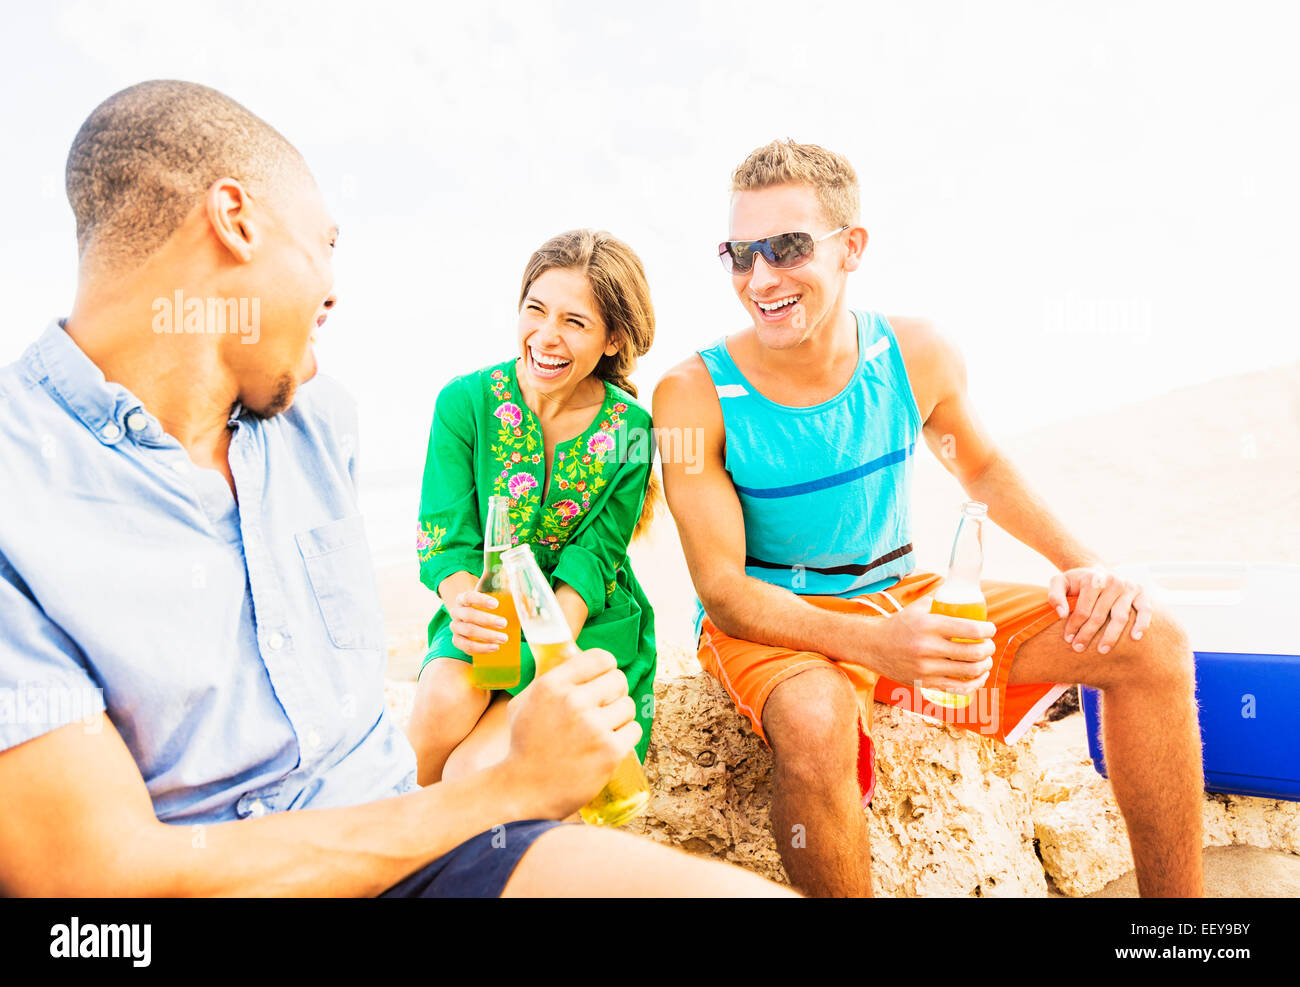 Junge Menschen, die Bier trinken am Strand Stockfoto